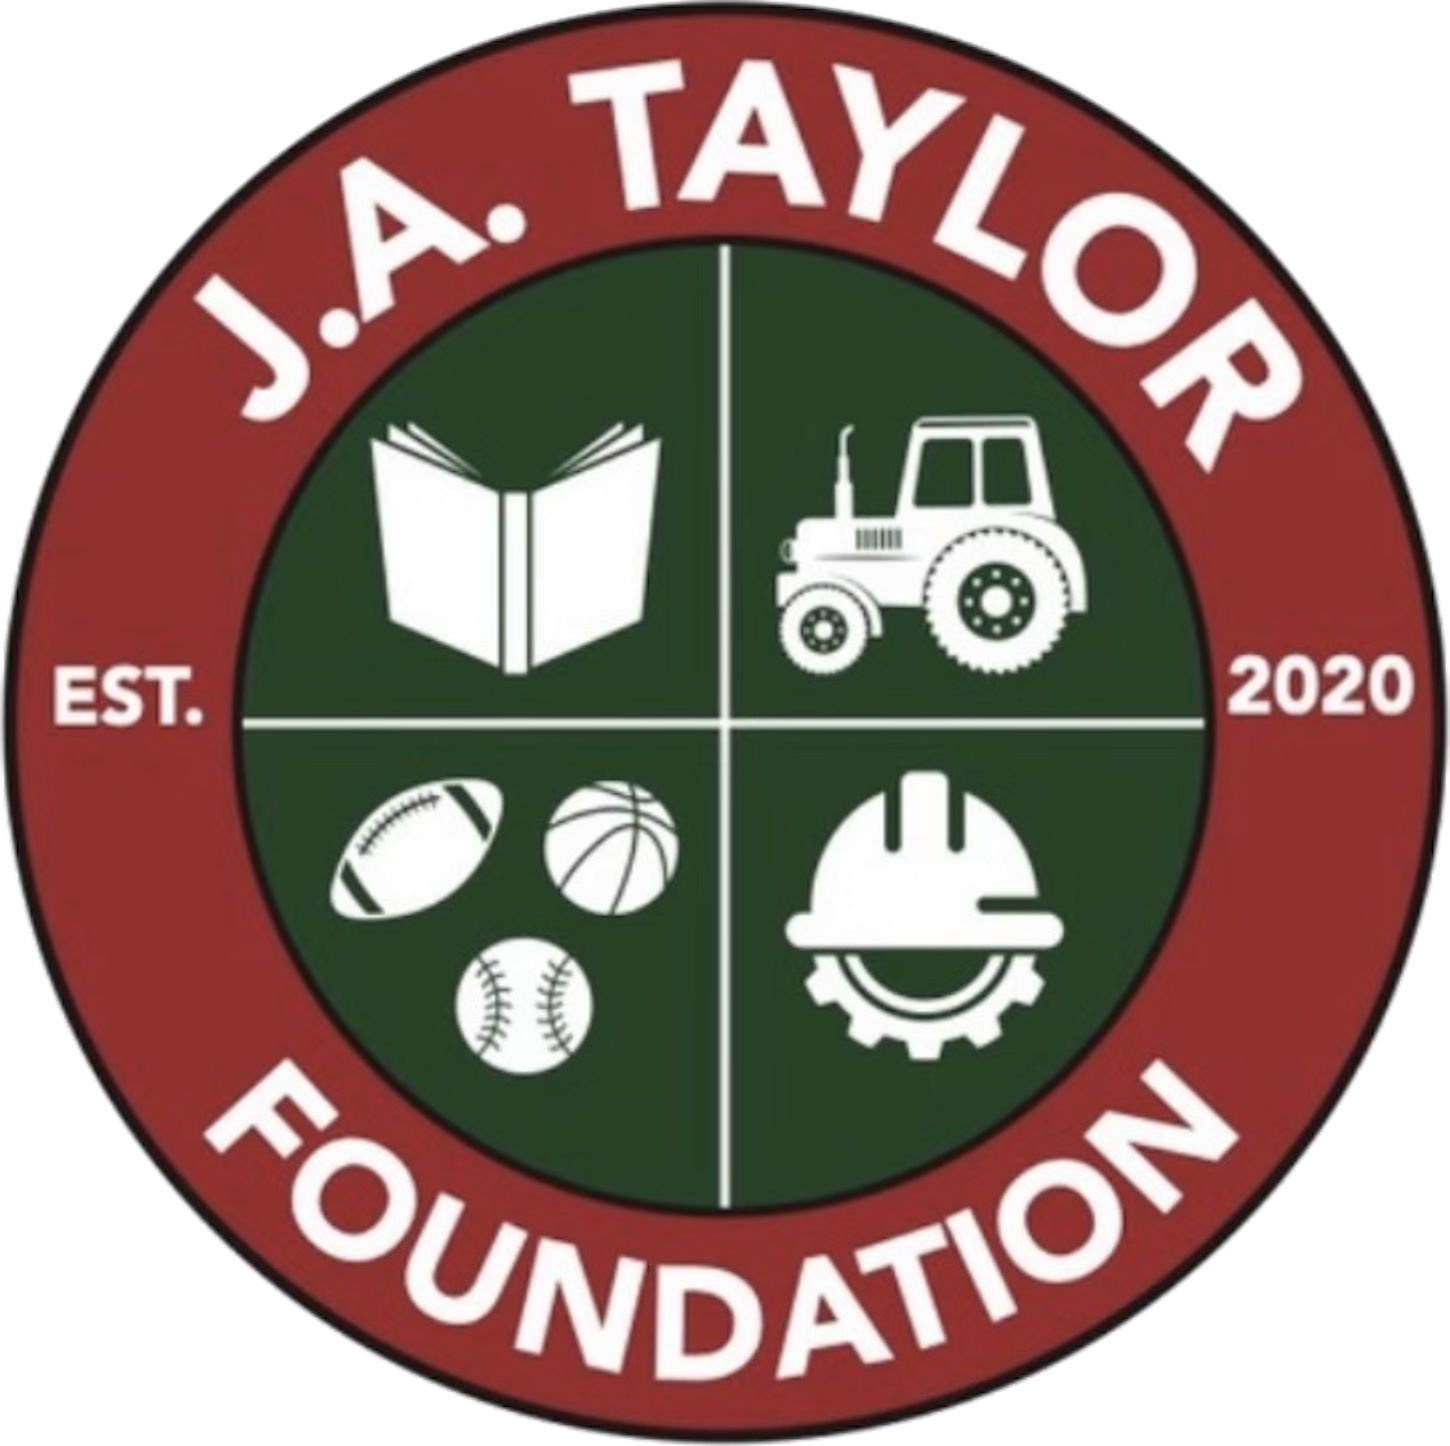 J.A. Taylor Foundation